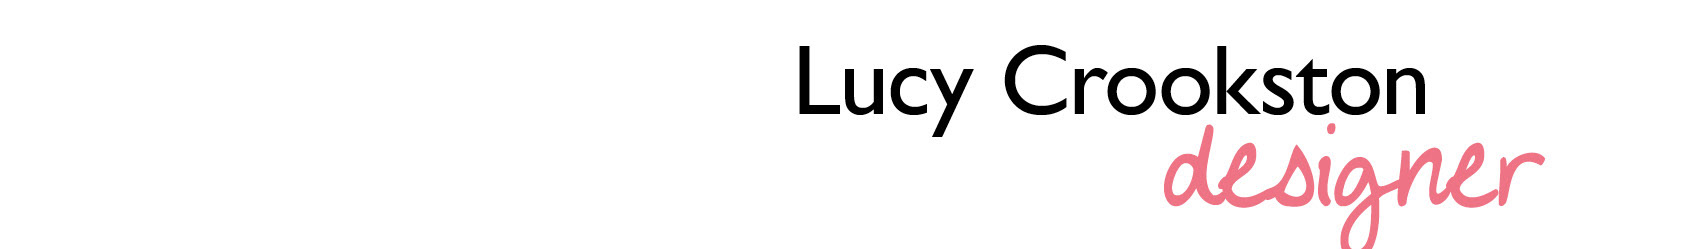 Lucy Crookston のプロファイルバナー